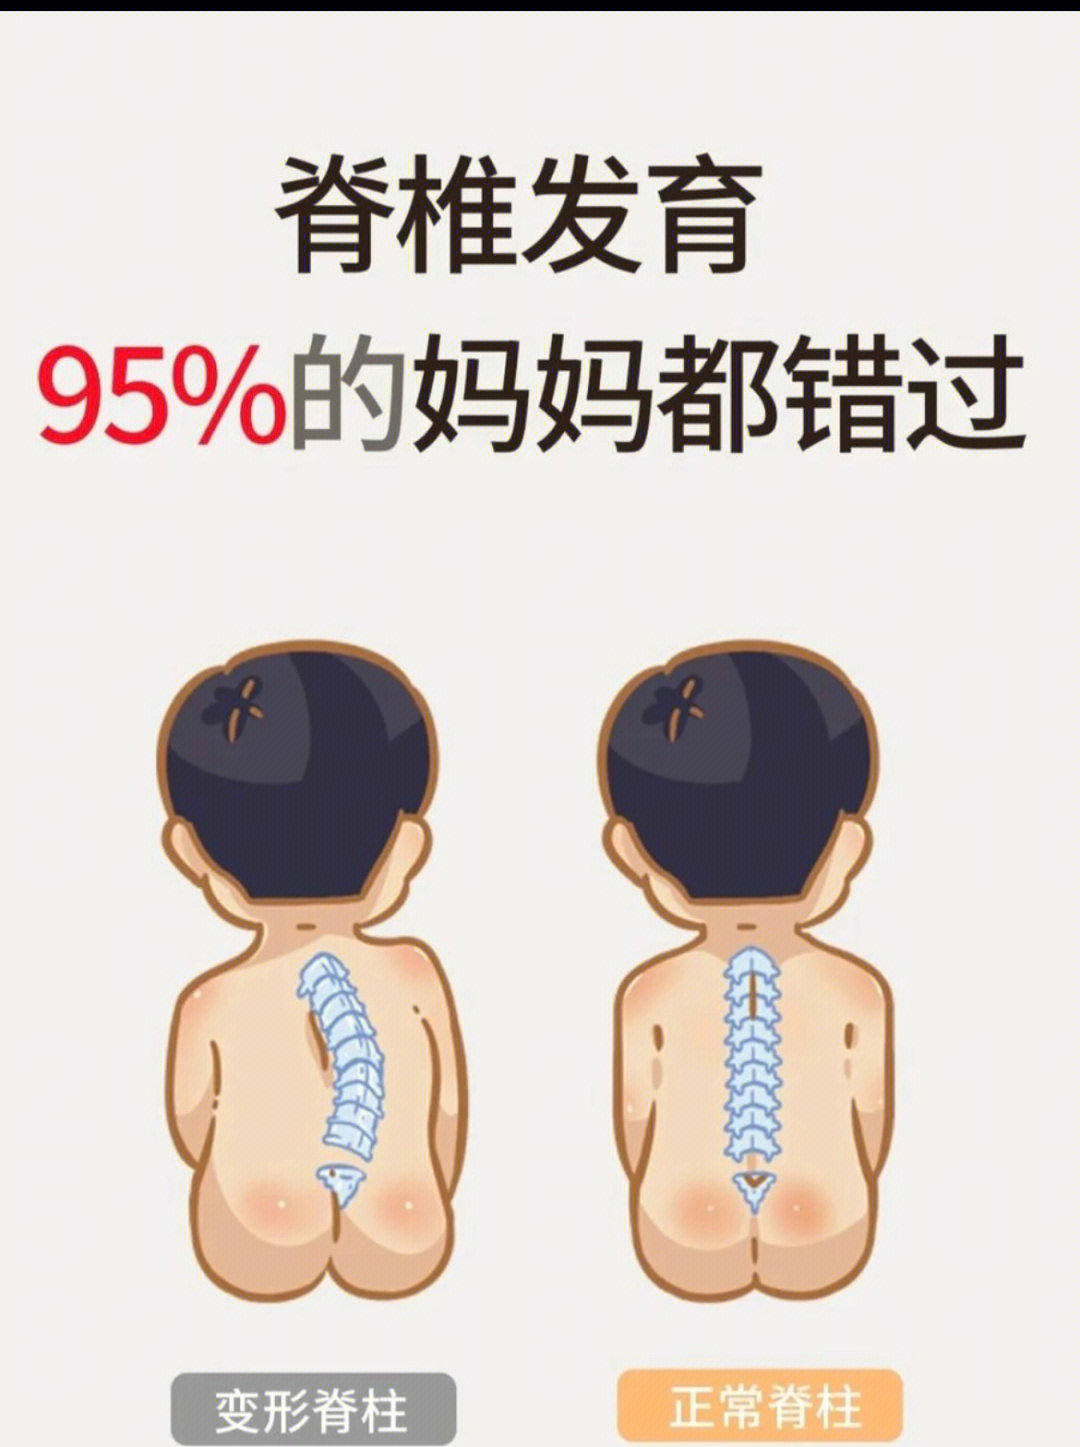 4%的儿童出现脊柱变形